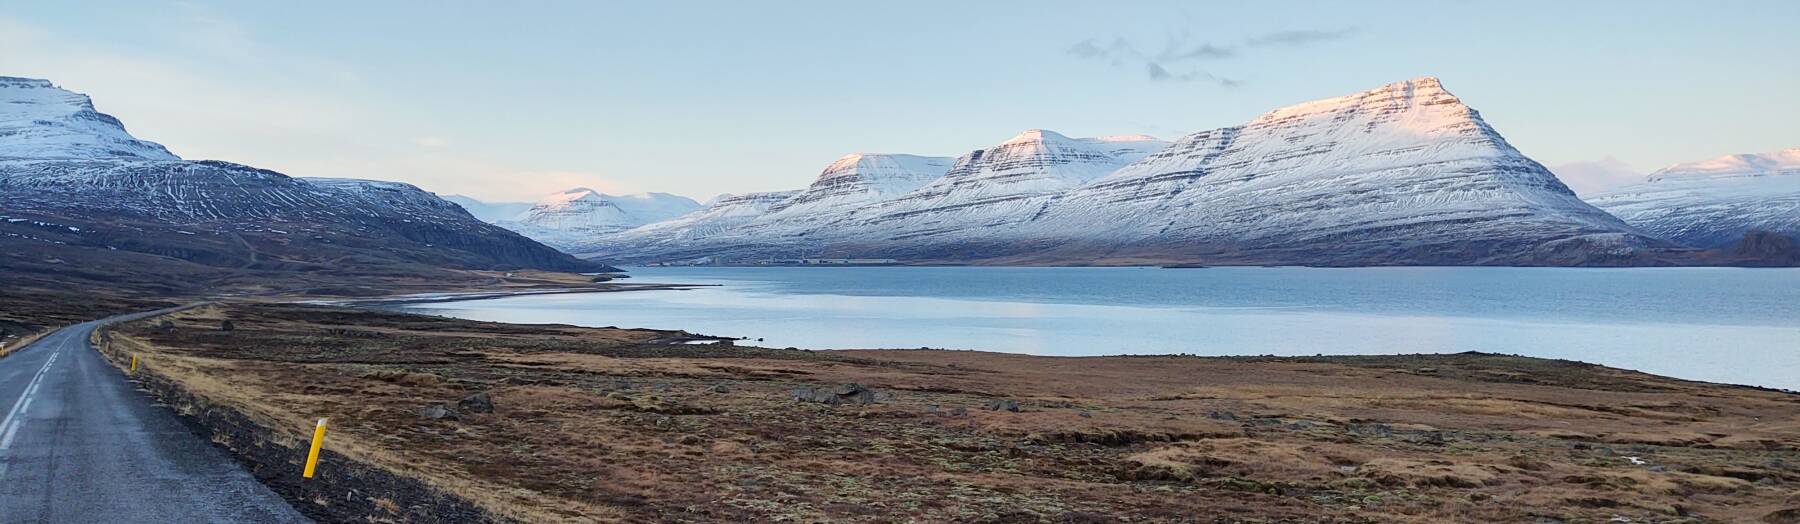 Reyðarfjörður fjord in Iceland.